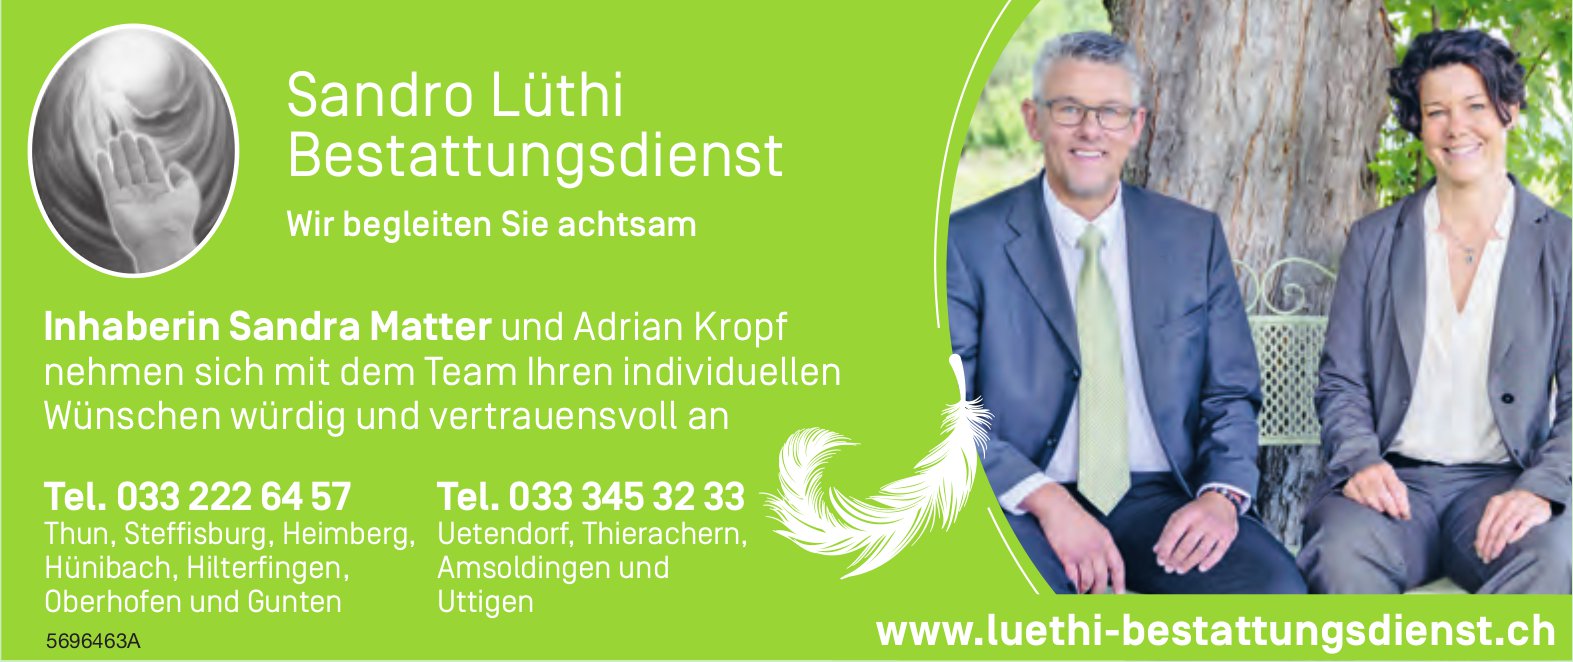 Sandro Lüthi Bestattungsdienst - Wir begleiten Sie achtsam